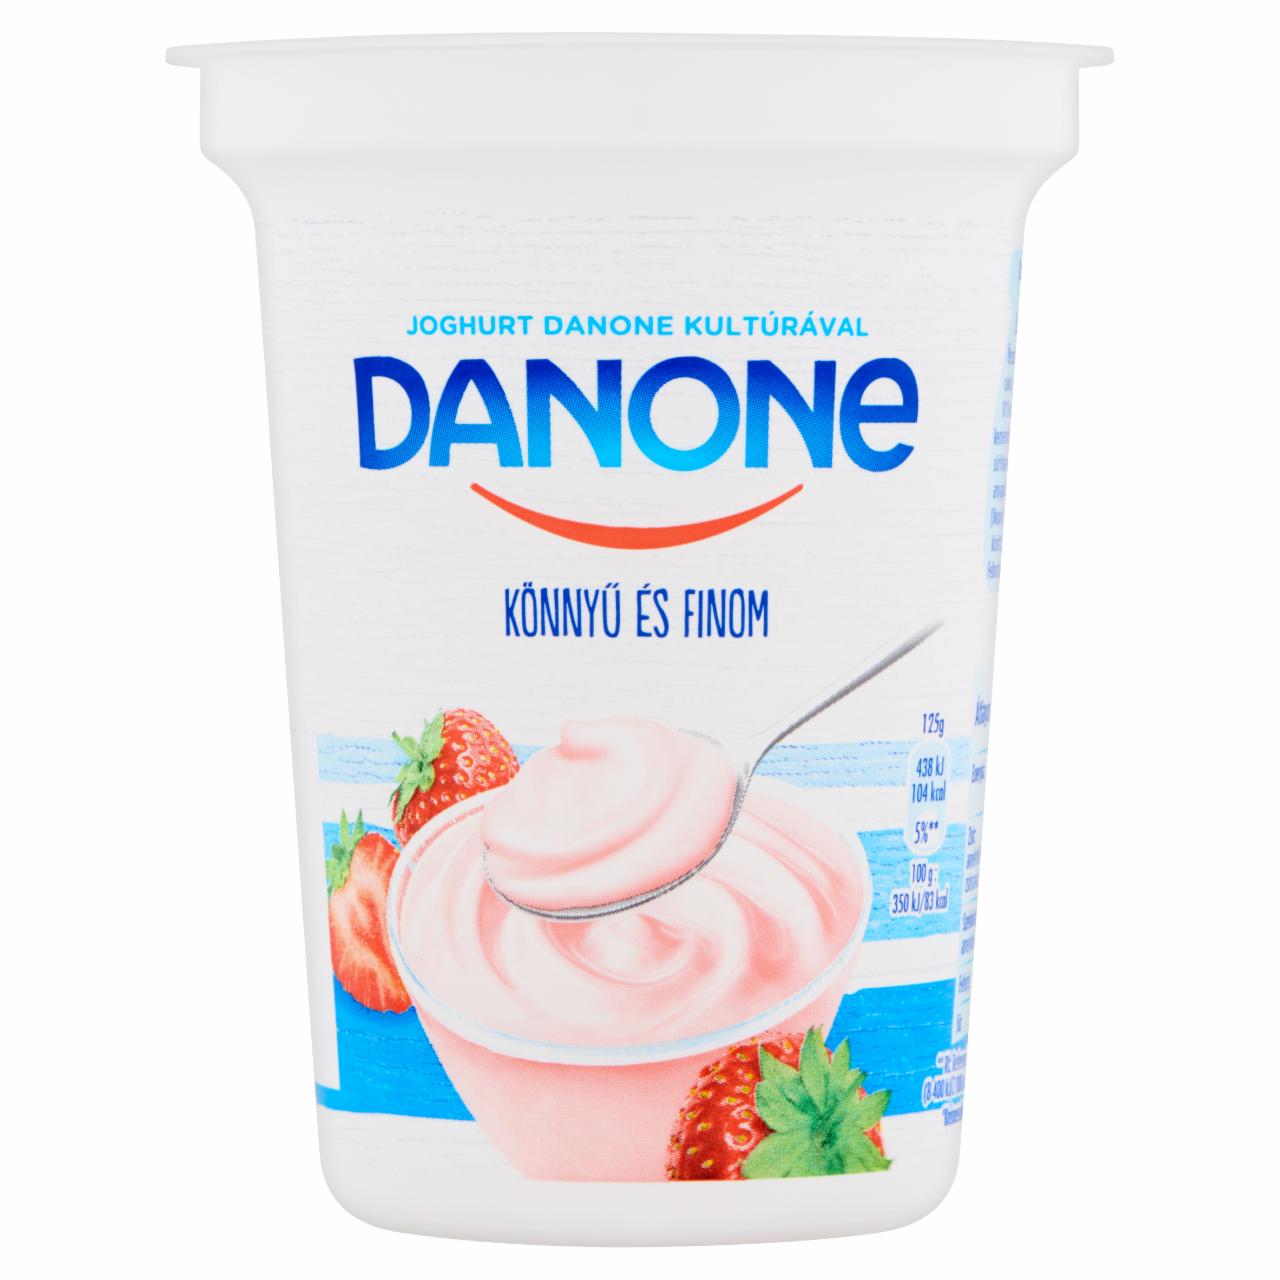 Képek - Danone eperízű, élőflórás, zsírszegény joghurt 400 g